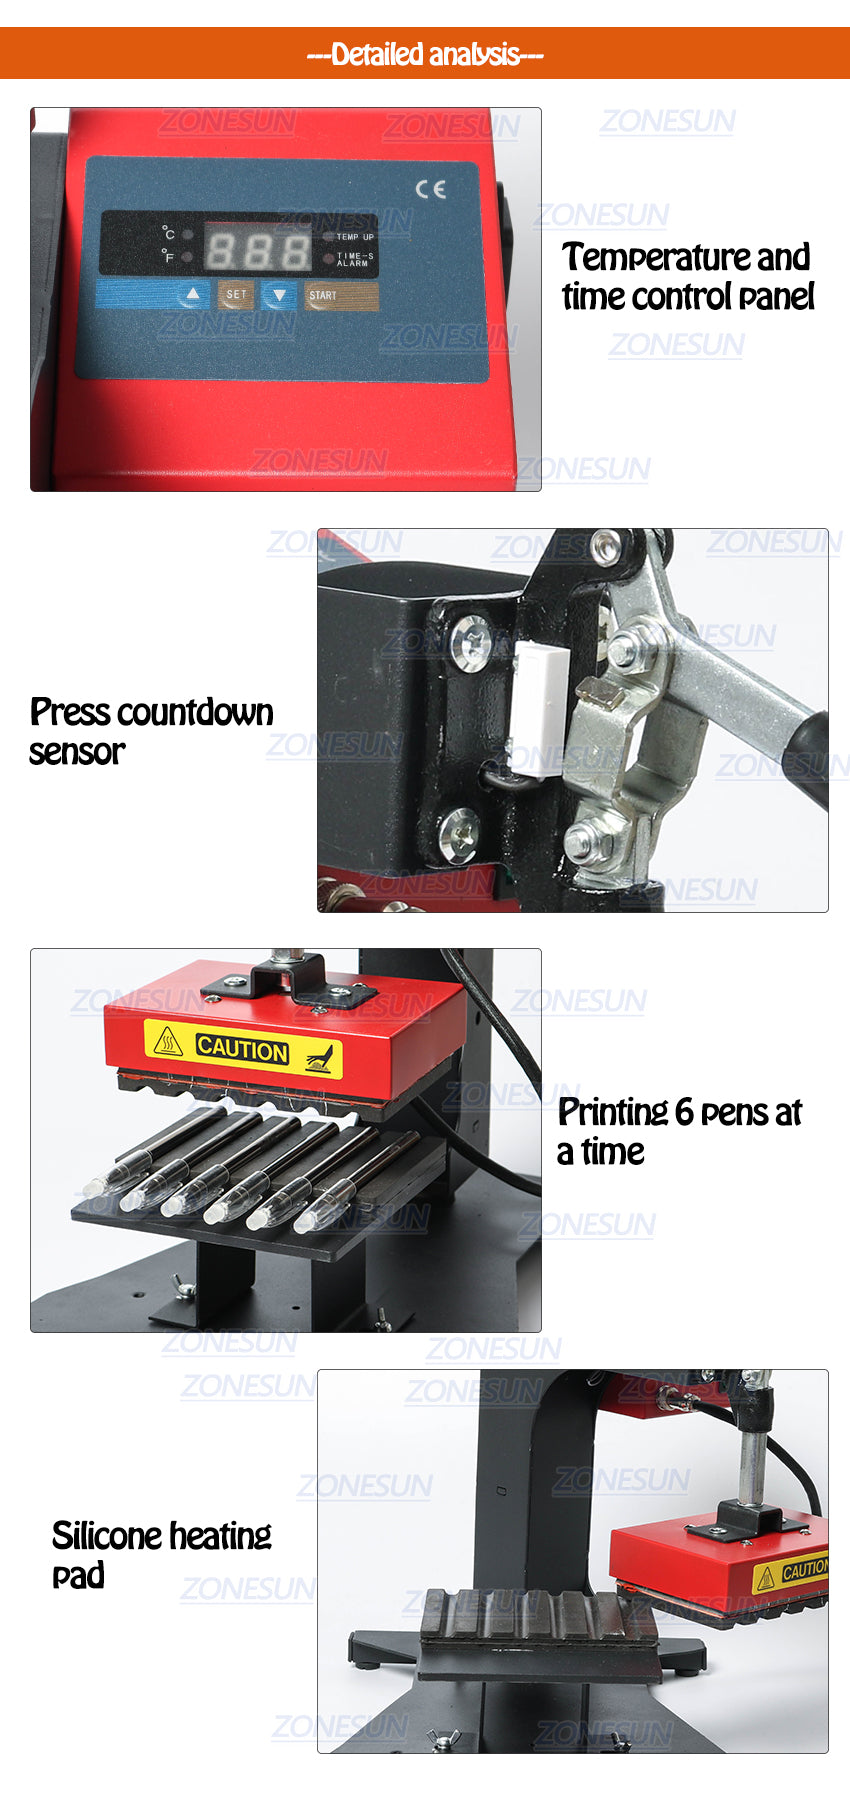 Máquina de impressão a quente com caneta ZONESUN